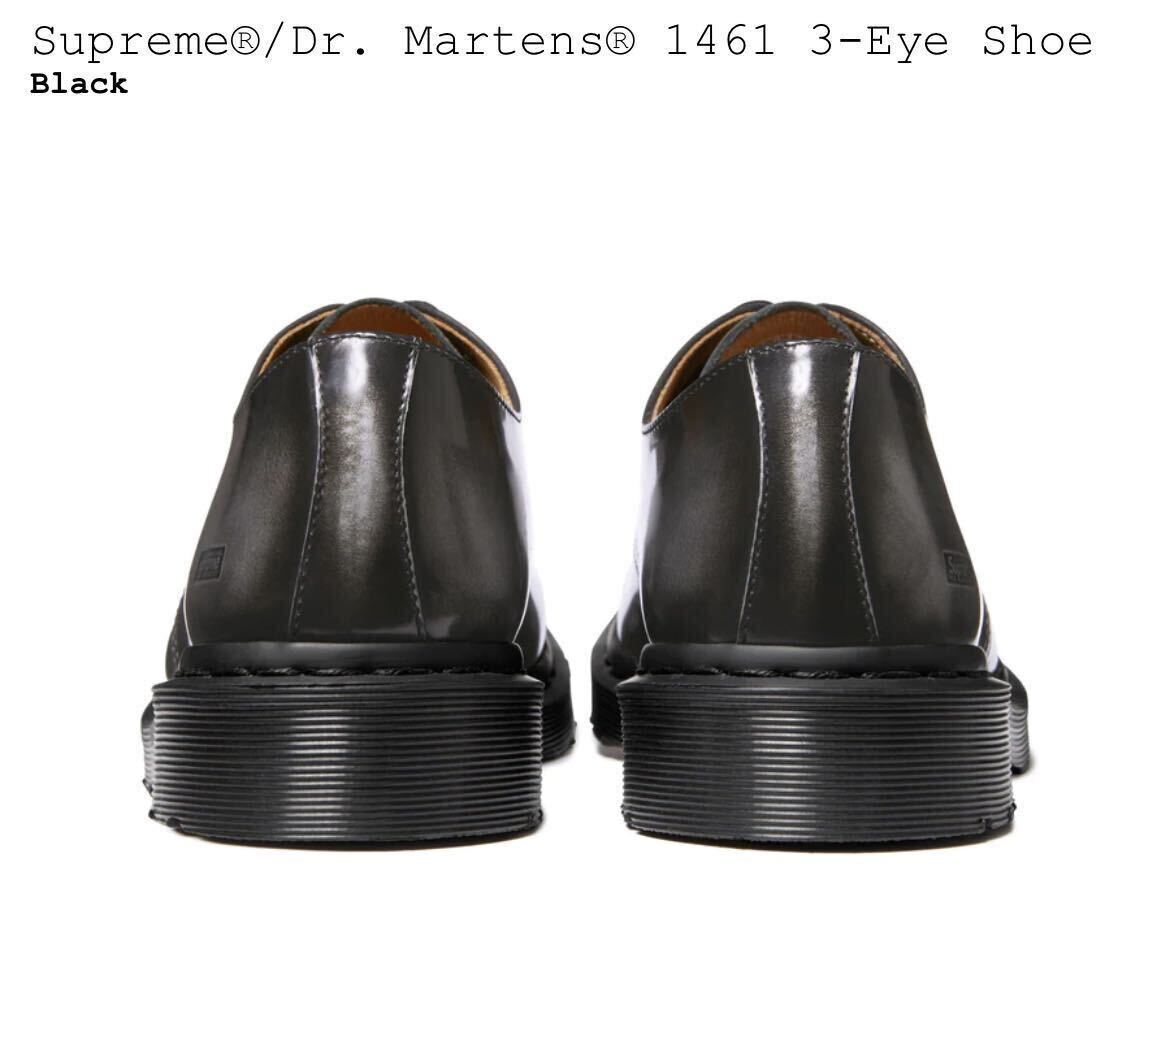 新品 Supreme Dr Martens 1461 3-Eye Shoe US10 black / シュプリーム ドクター マーチン 3アイホールシューズ 28cm Black 黒 24SS 即納